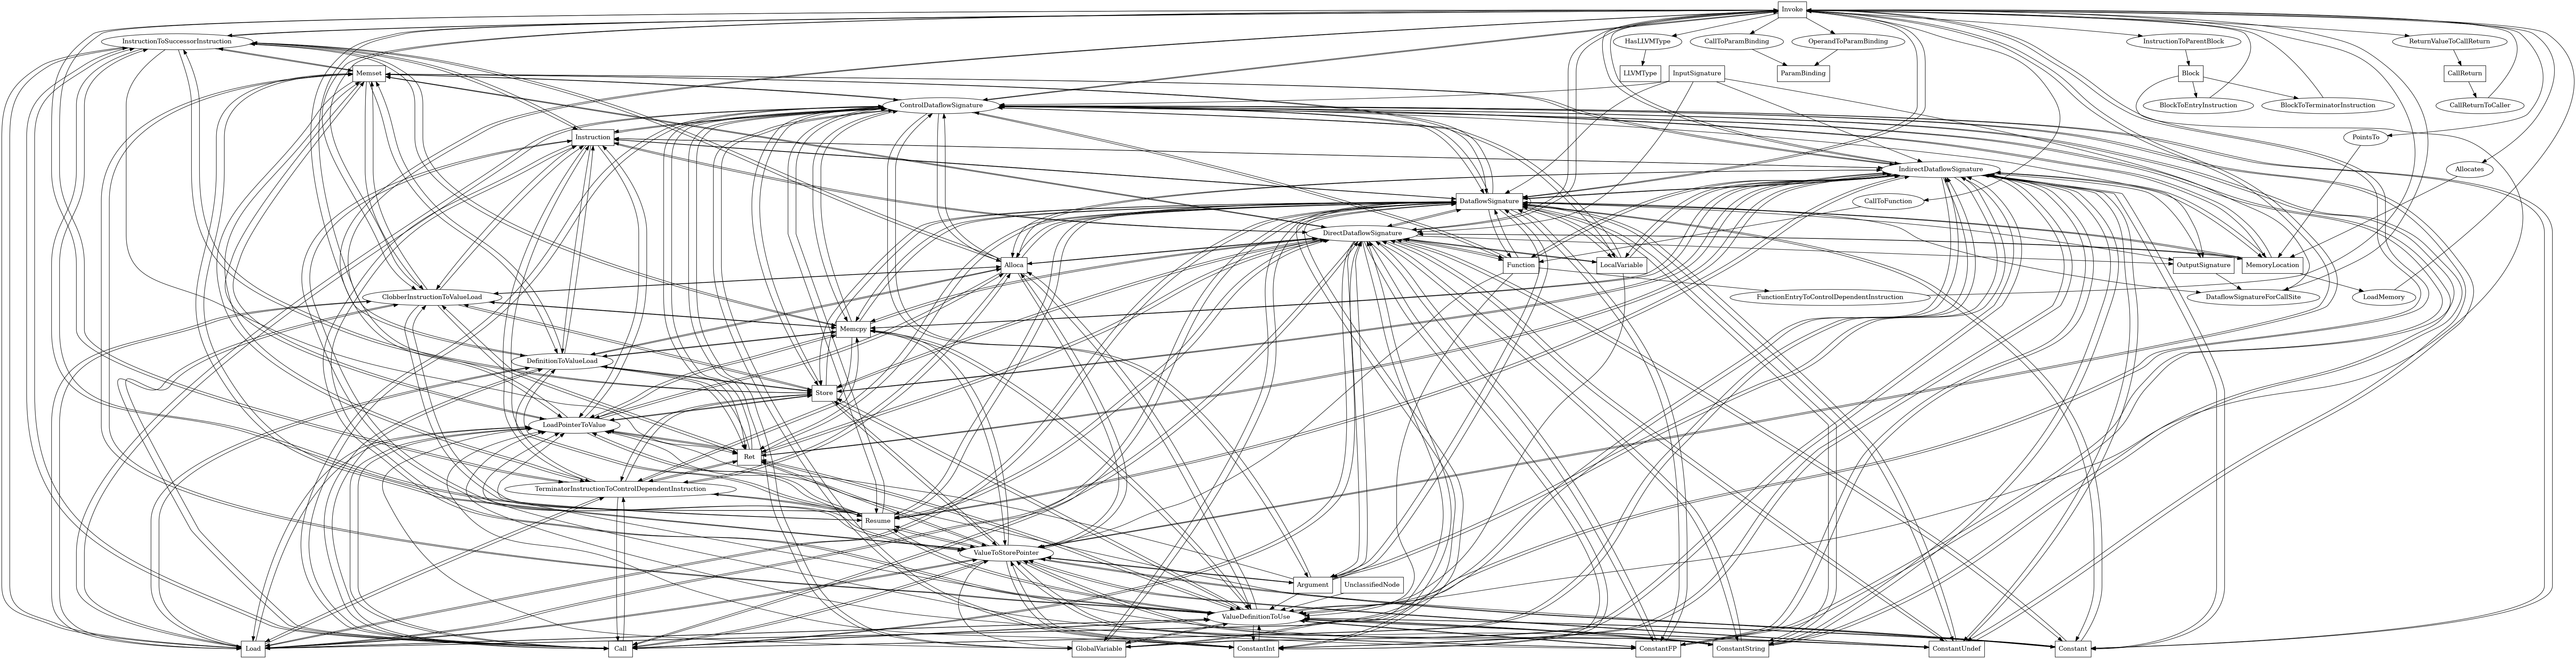 Entity-relationship diagram for Invoke nodes